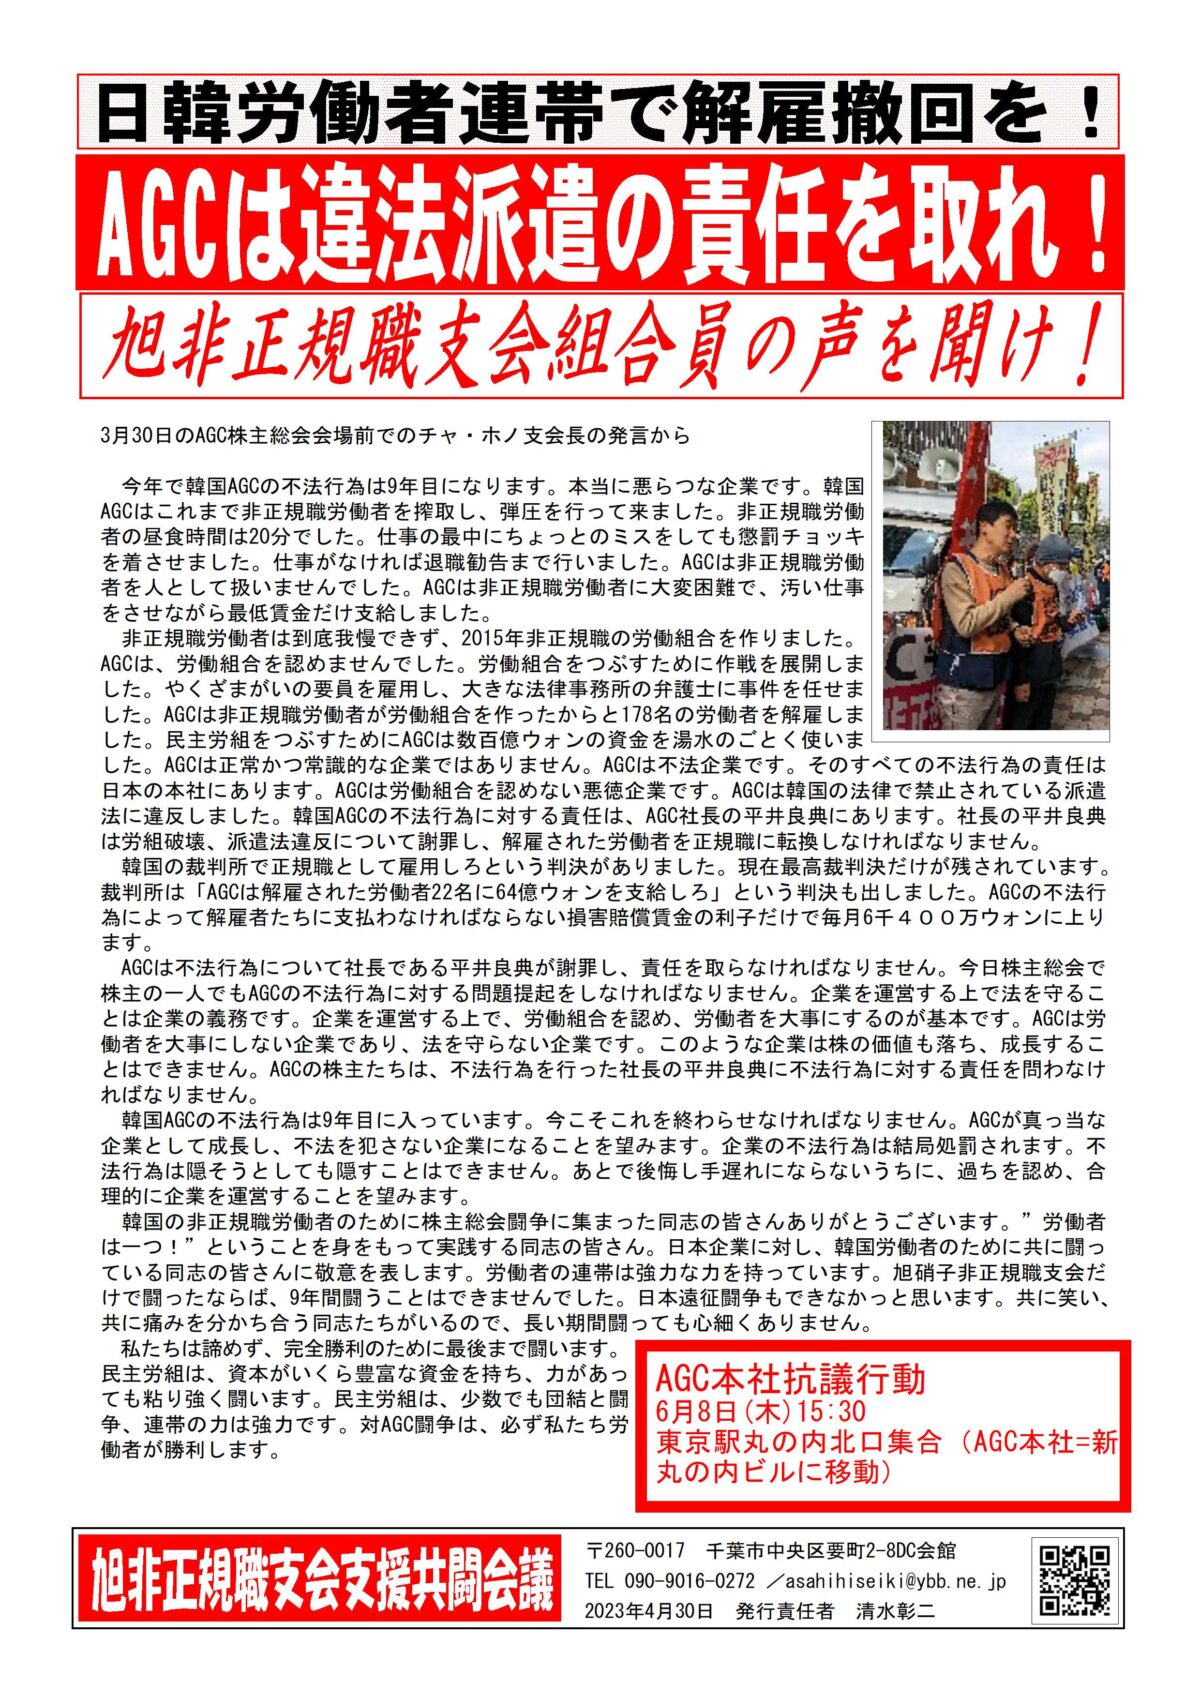 6月8日(木)AGC本社抗議申入れ行動に結集を！